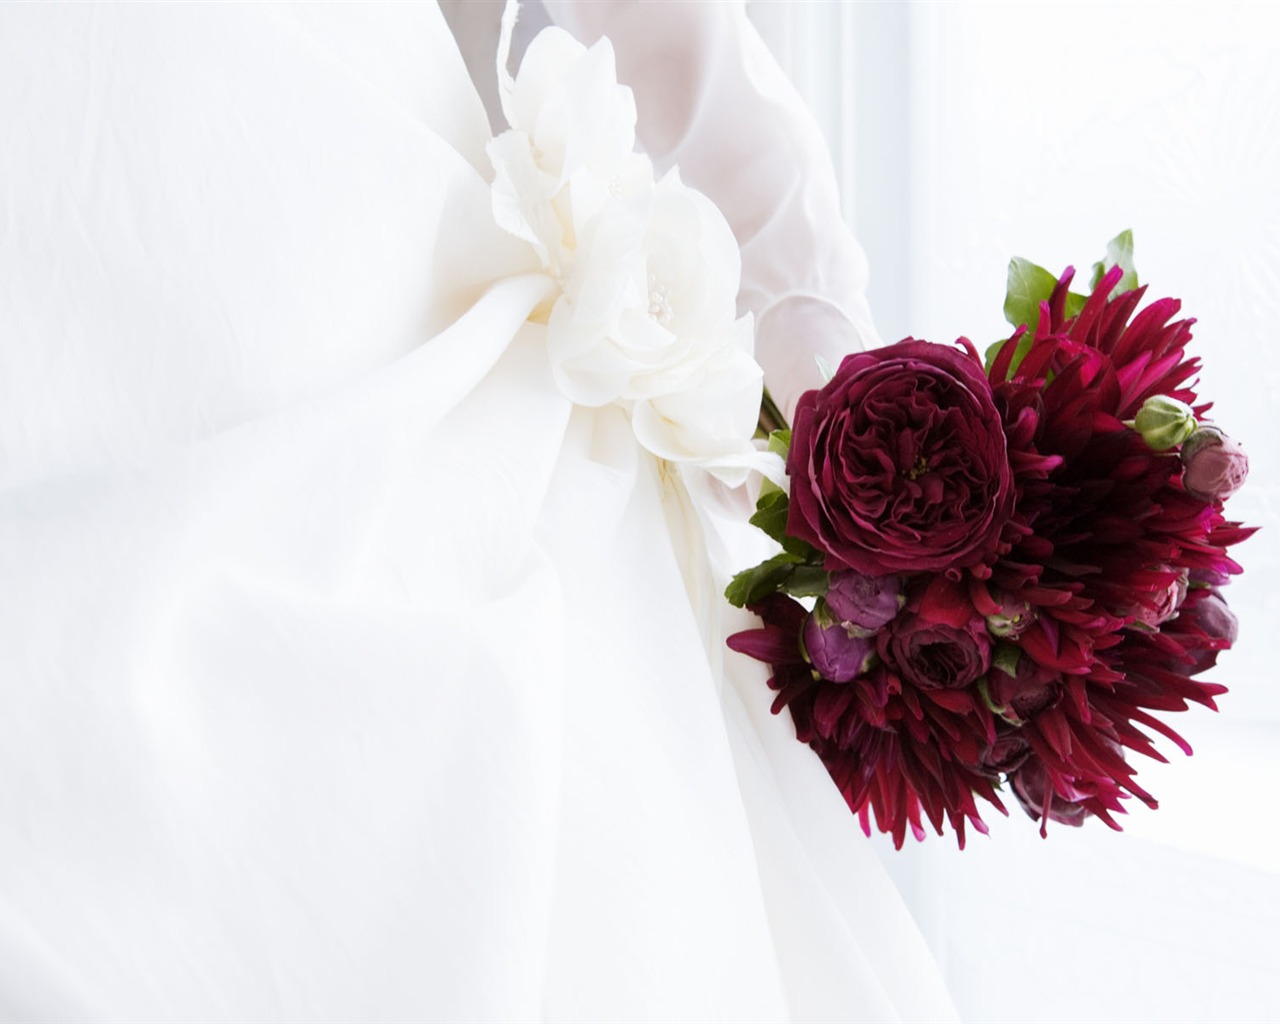 Fondos de Flores de boda (2) #10 - 1280x1024